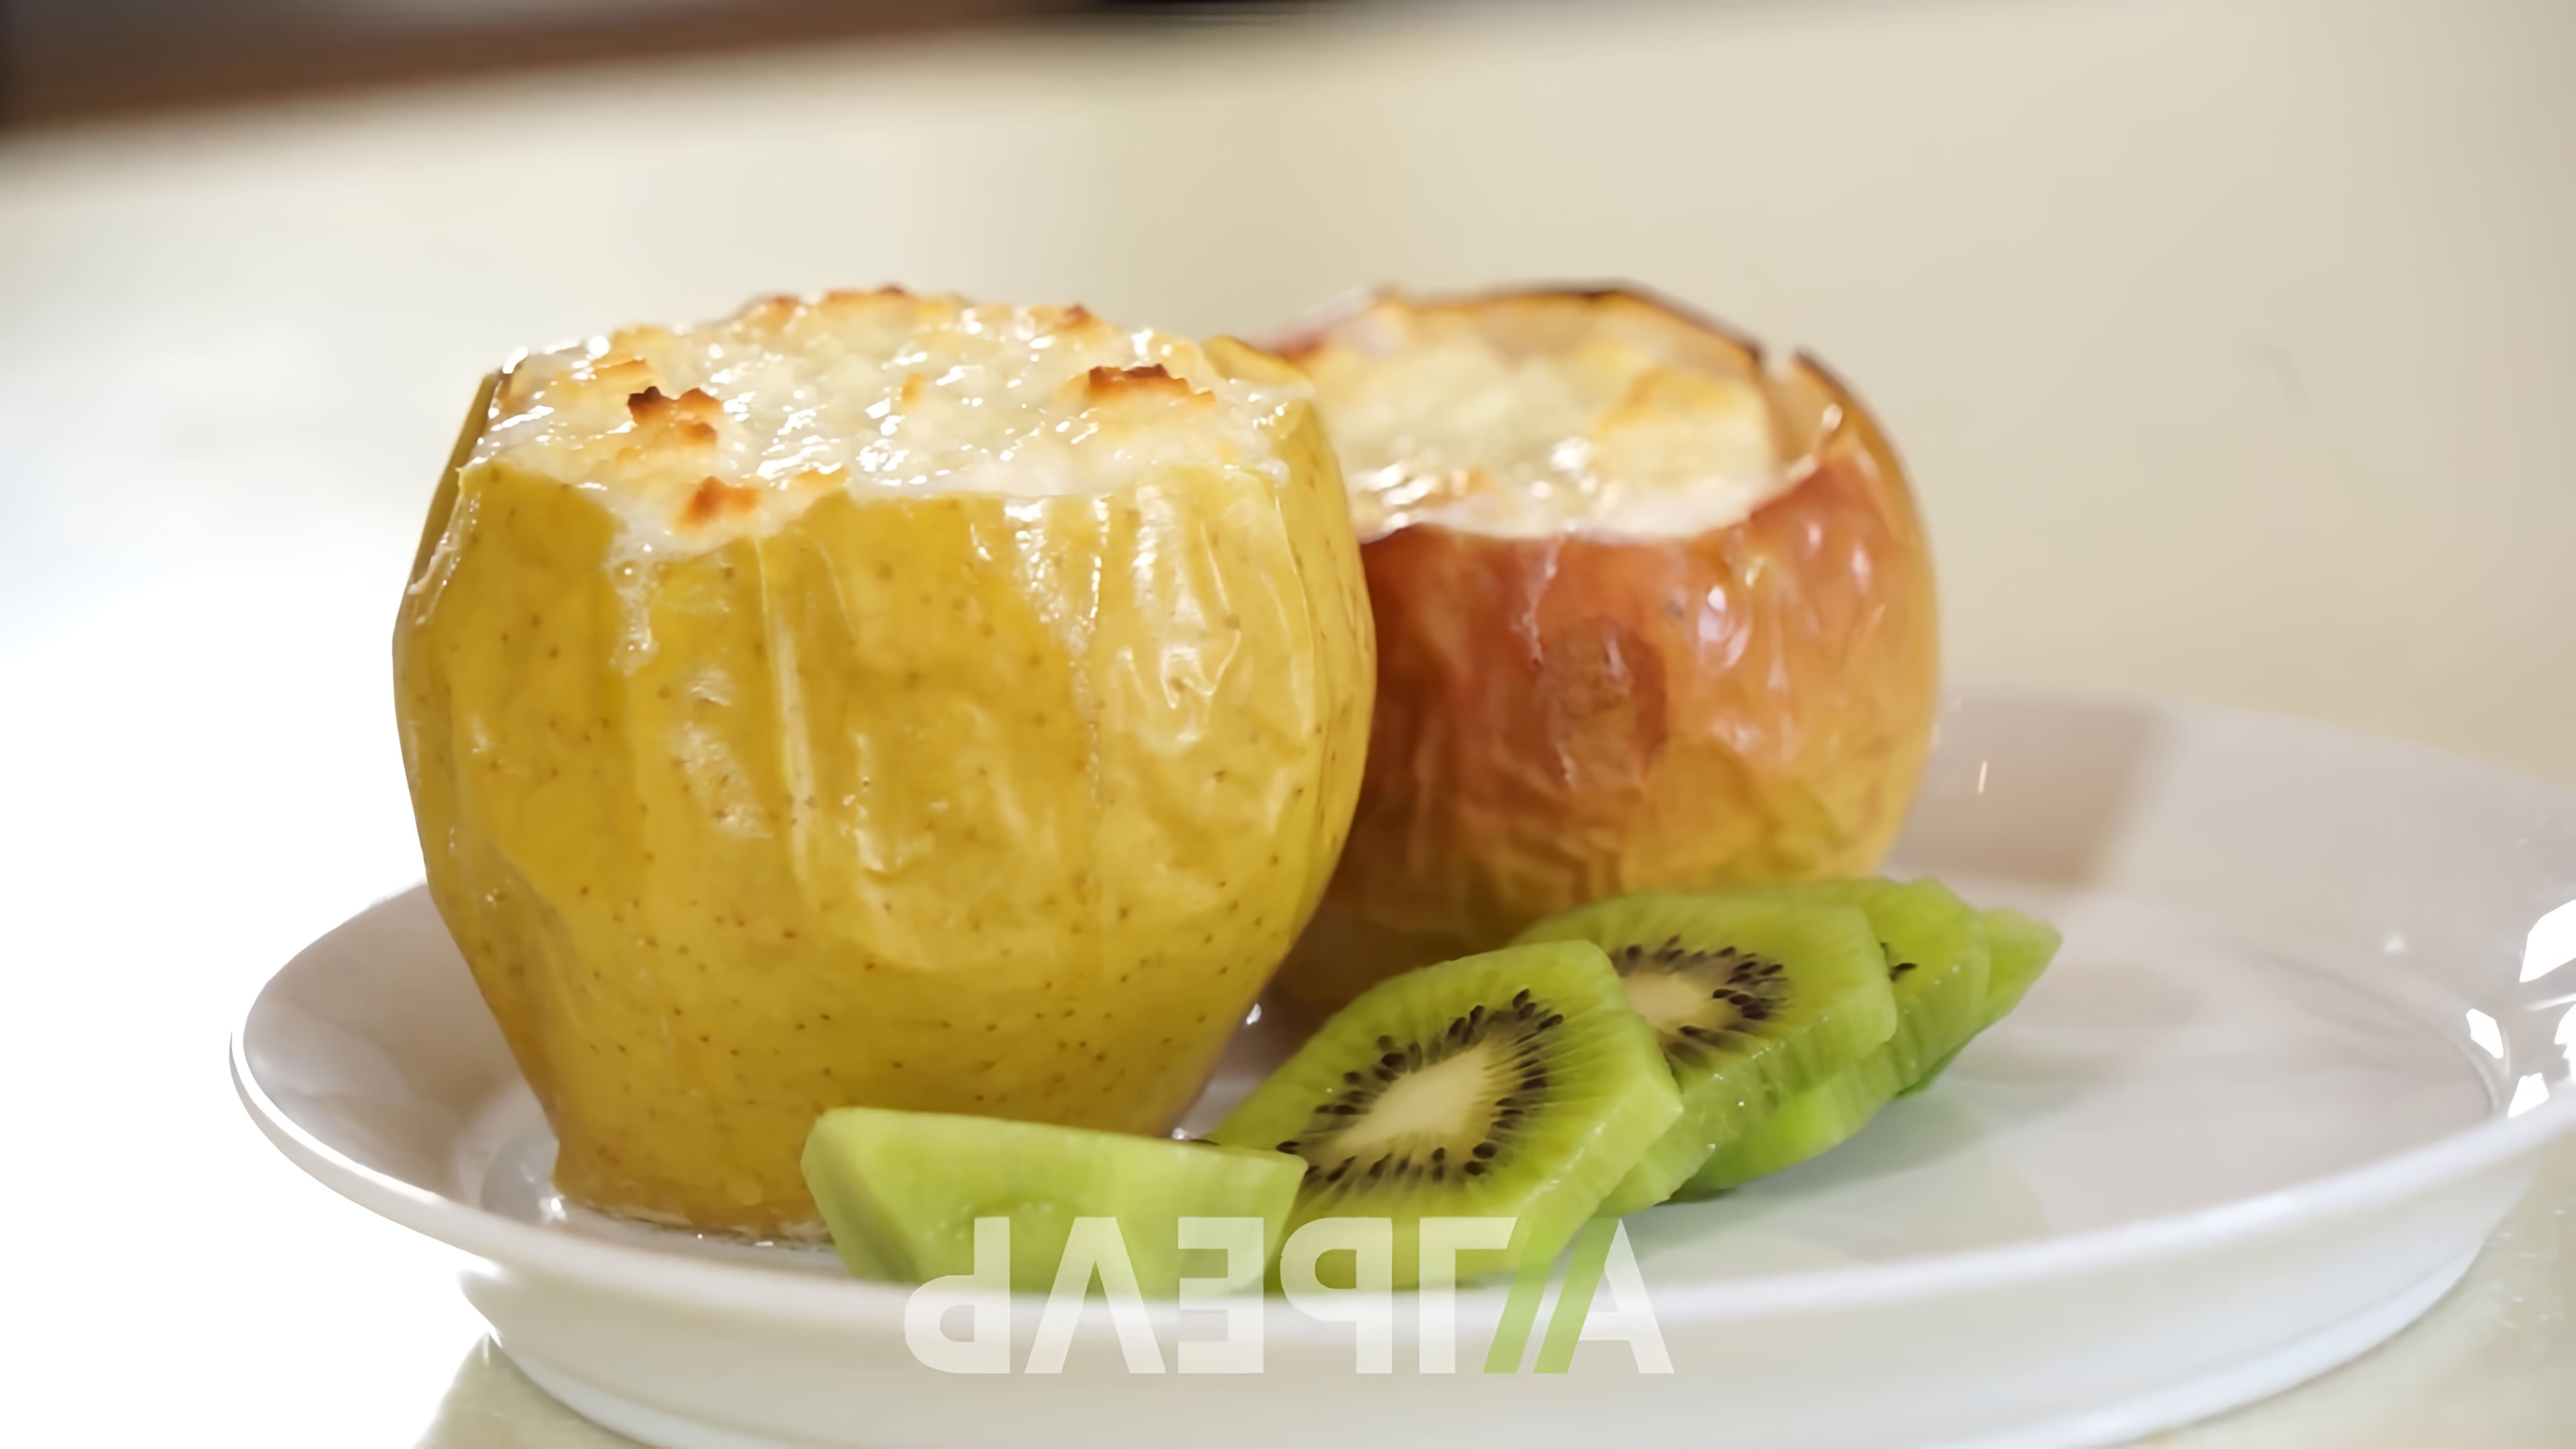 В этом видео демонстрируется простой и вкусный рецепт яблок, запеченных в духовке с творогом и медом